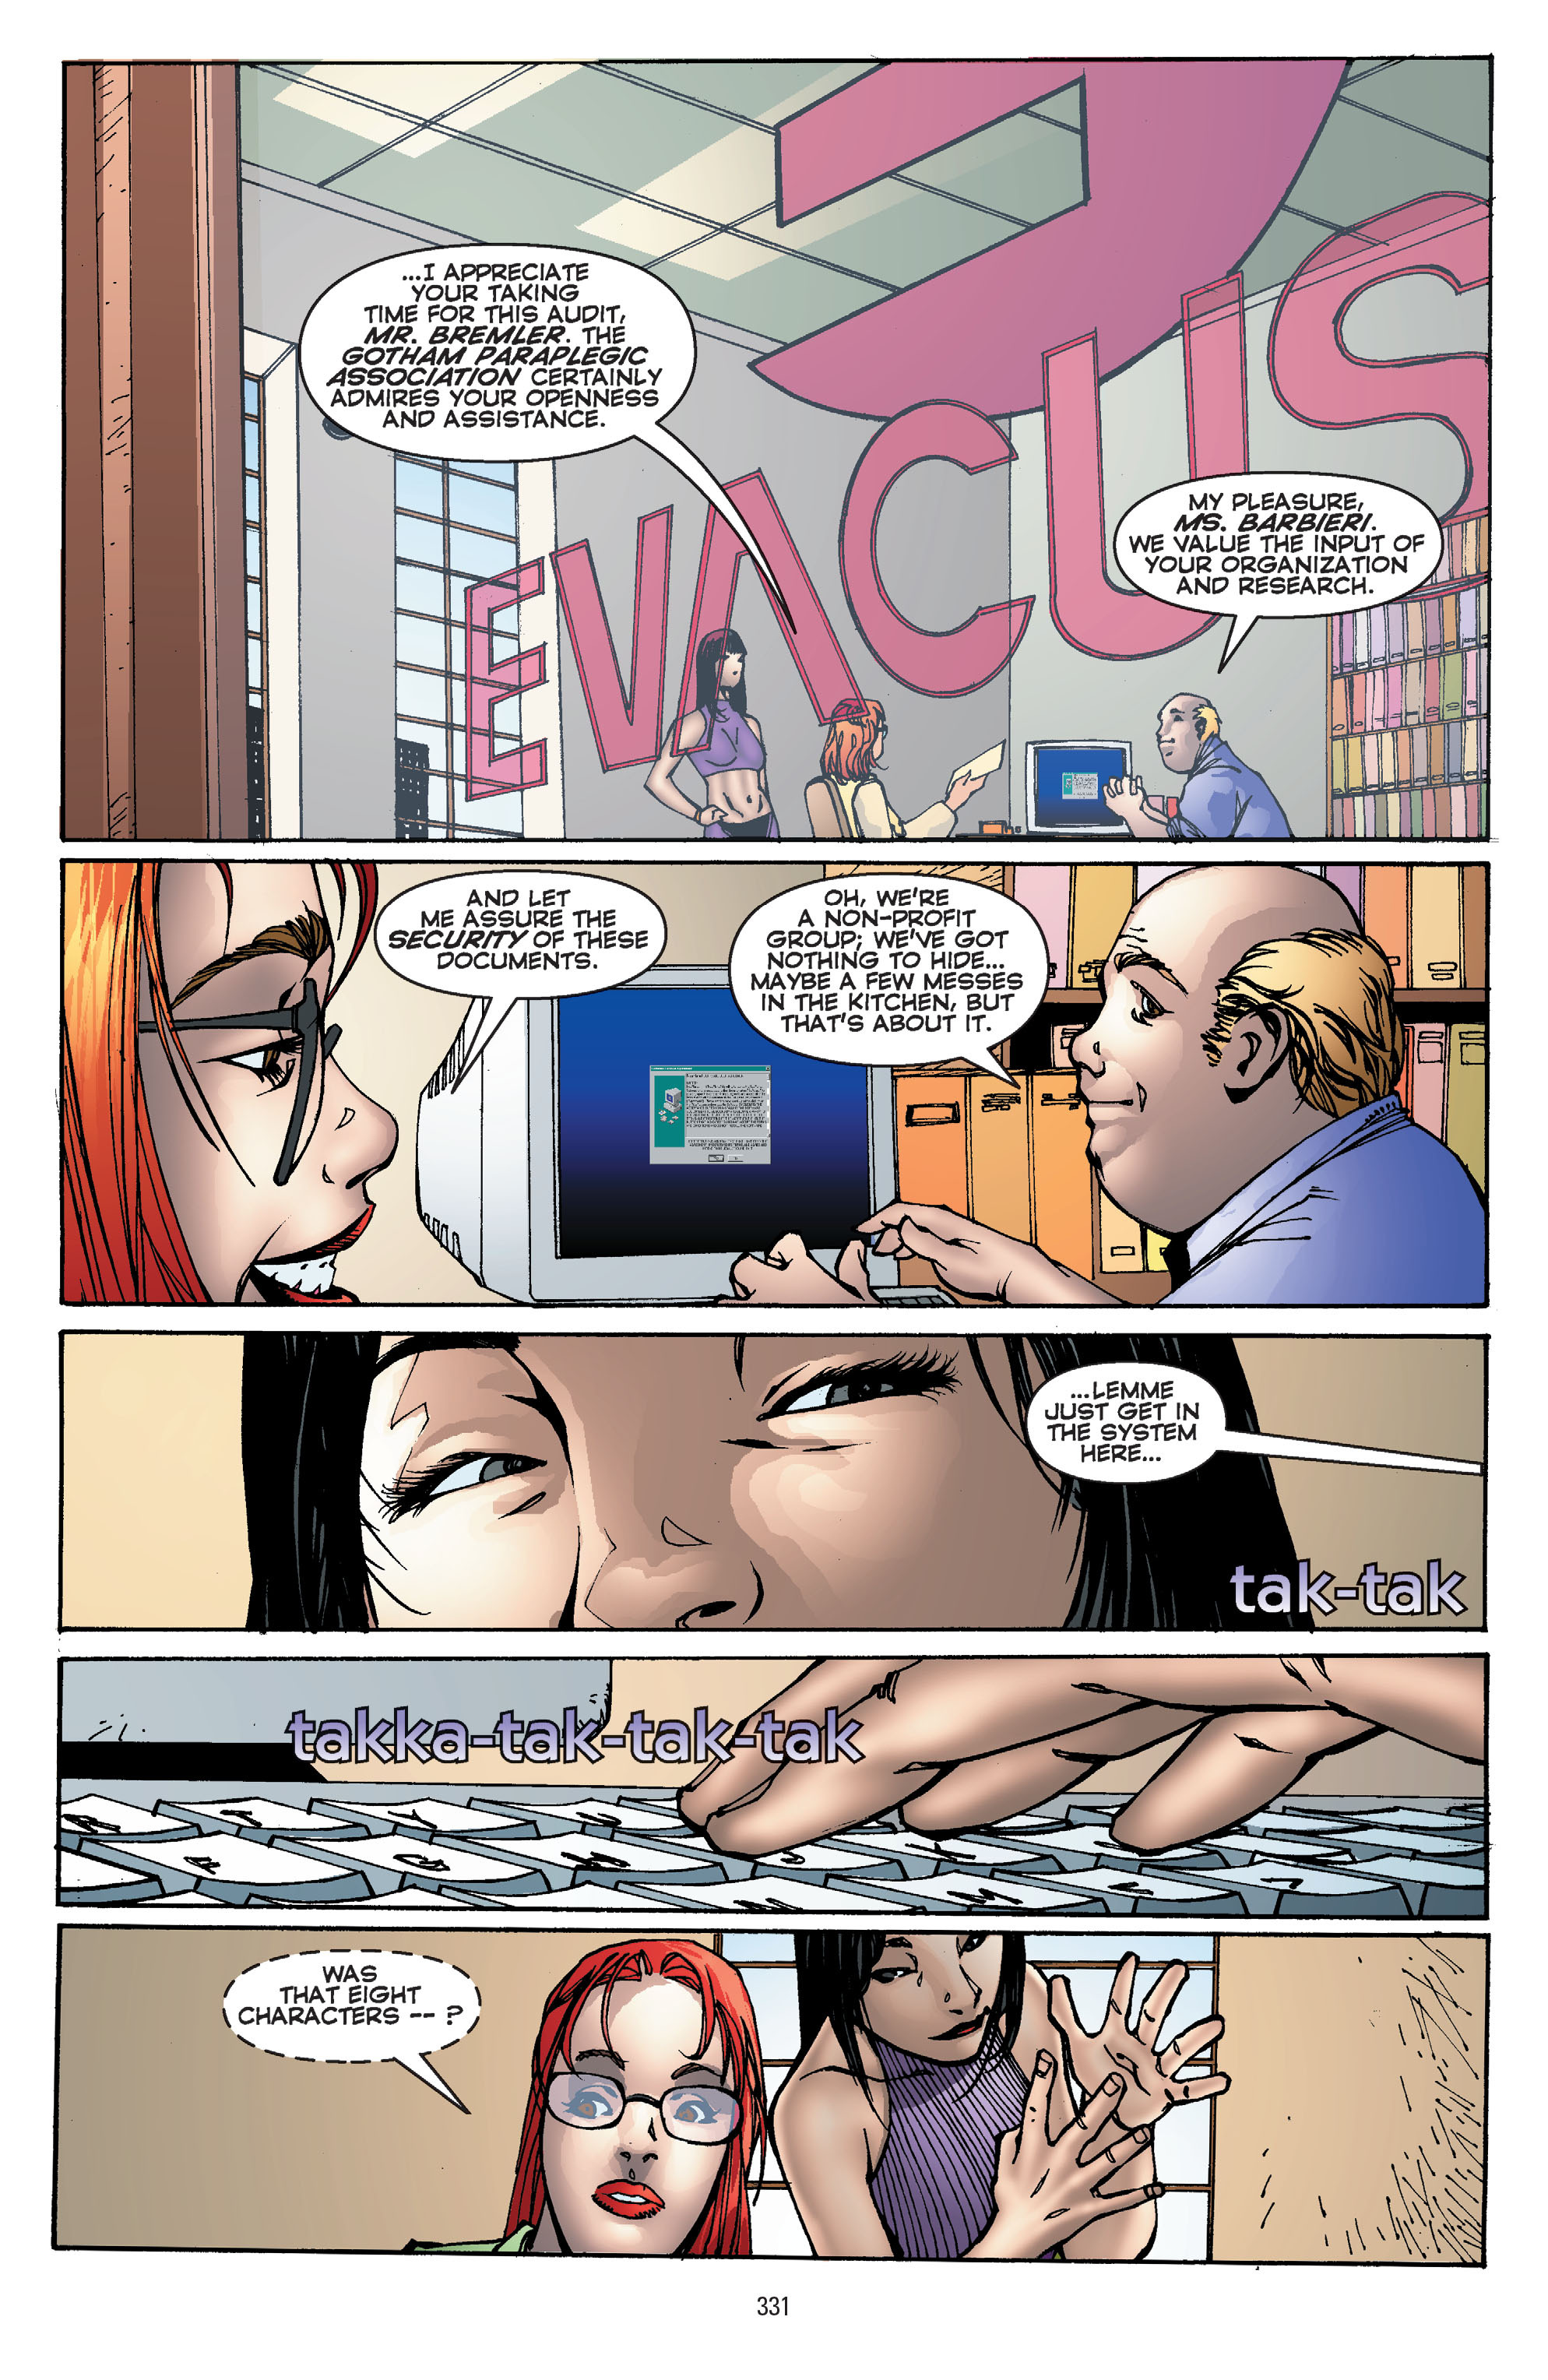 DC Comics/Dark Horse Comics: Justice League Full #1 - English 321